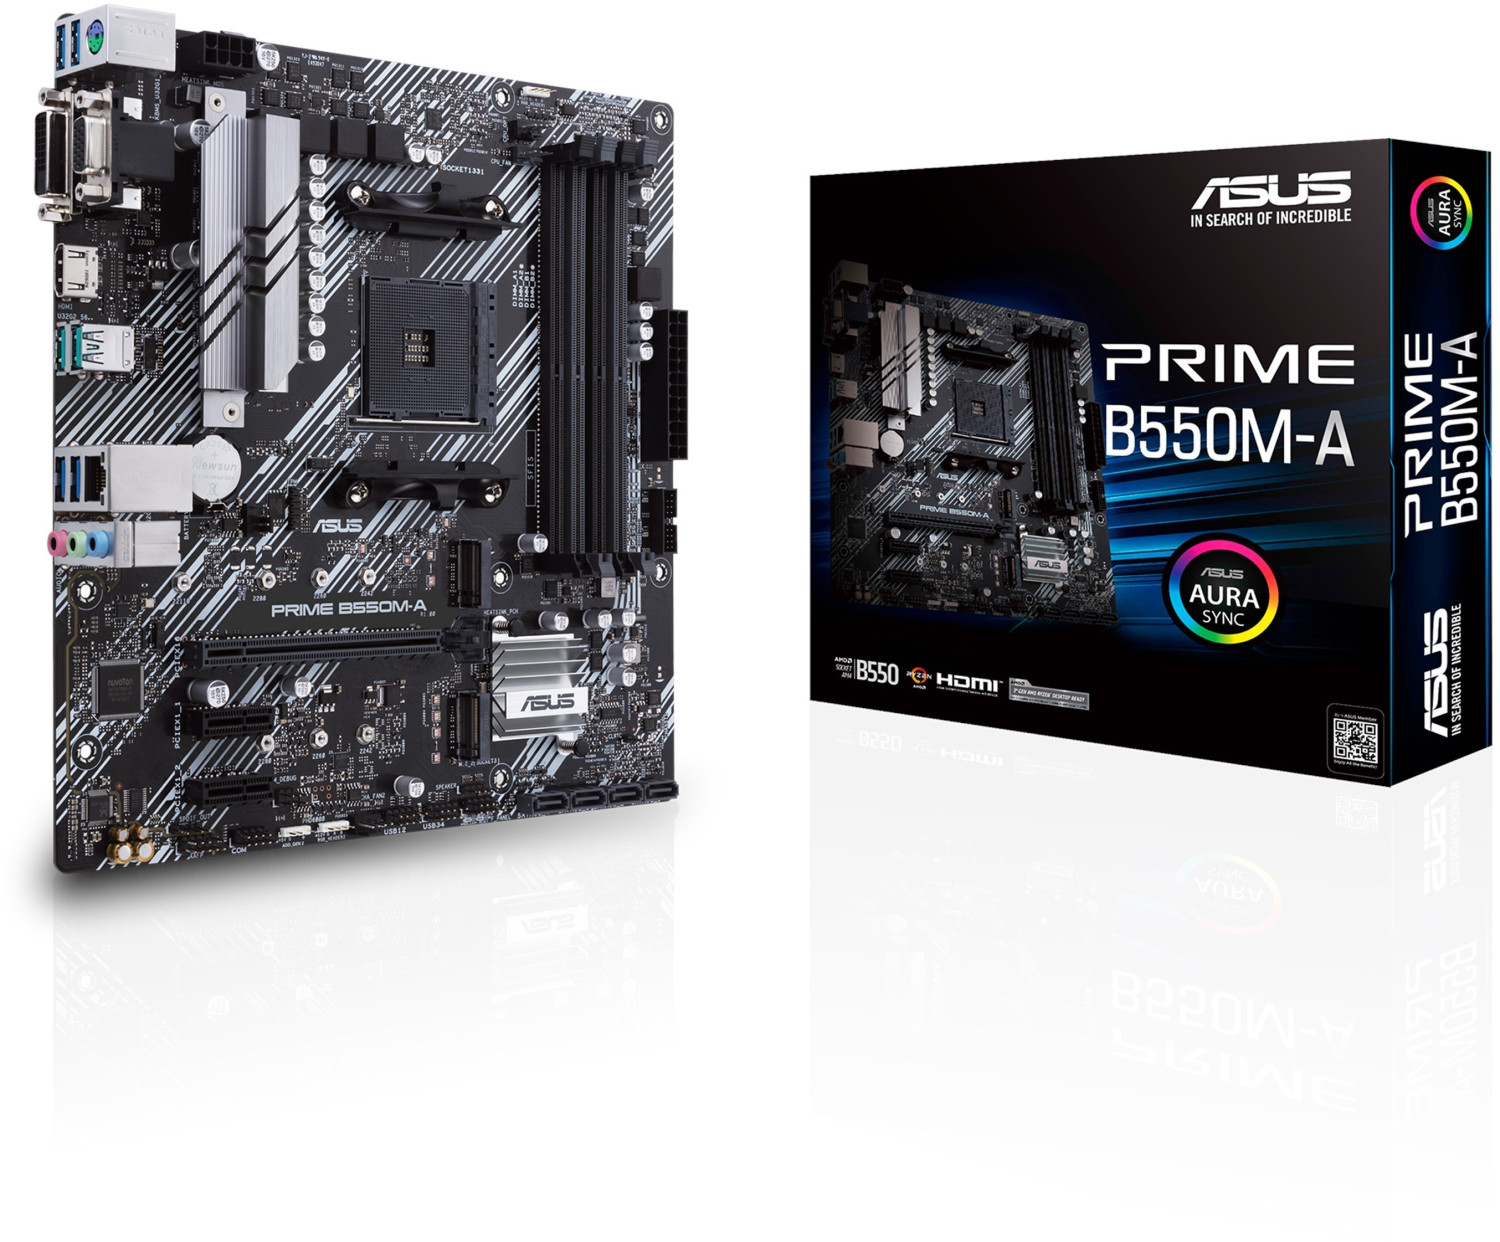 Asus Prime B550M-A ab 88,79 € | Preisvergleich bei idealo.de